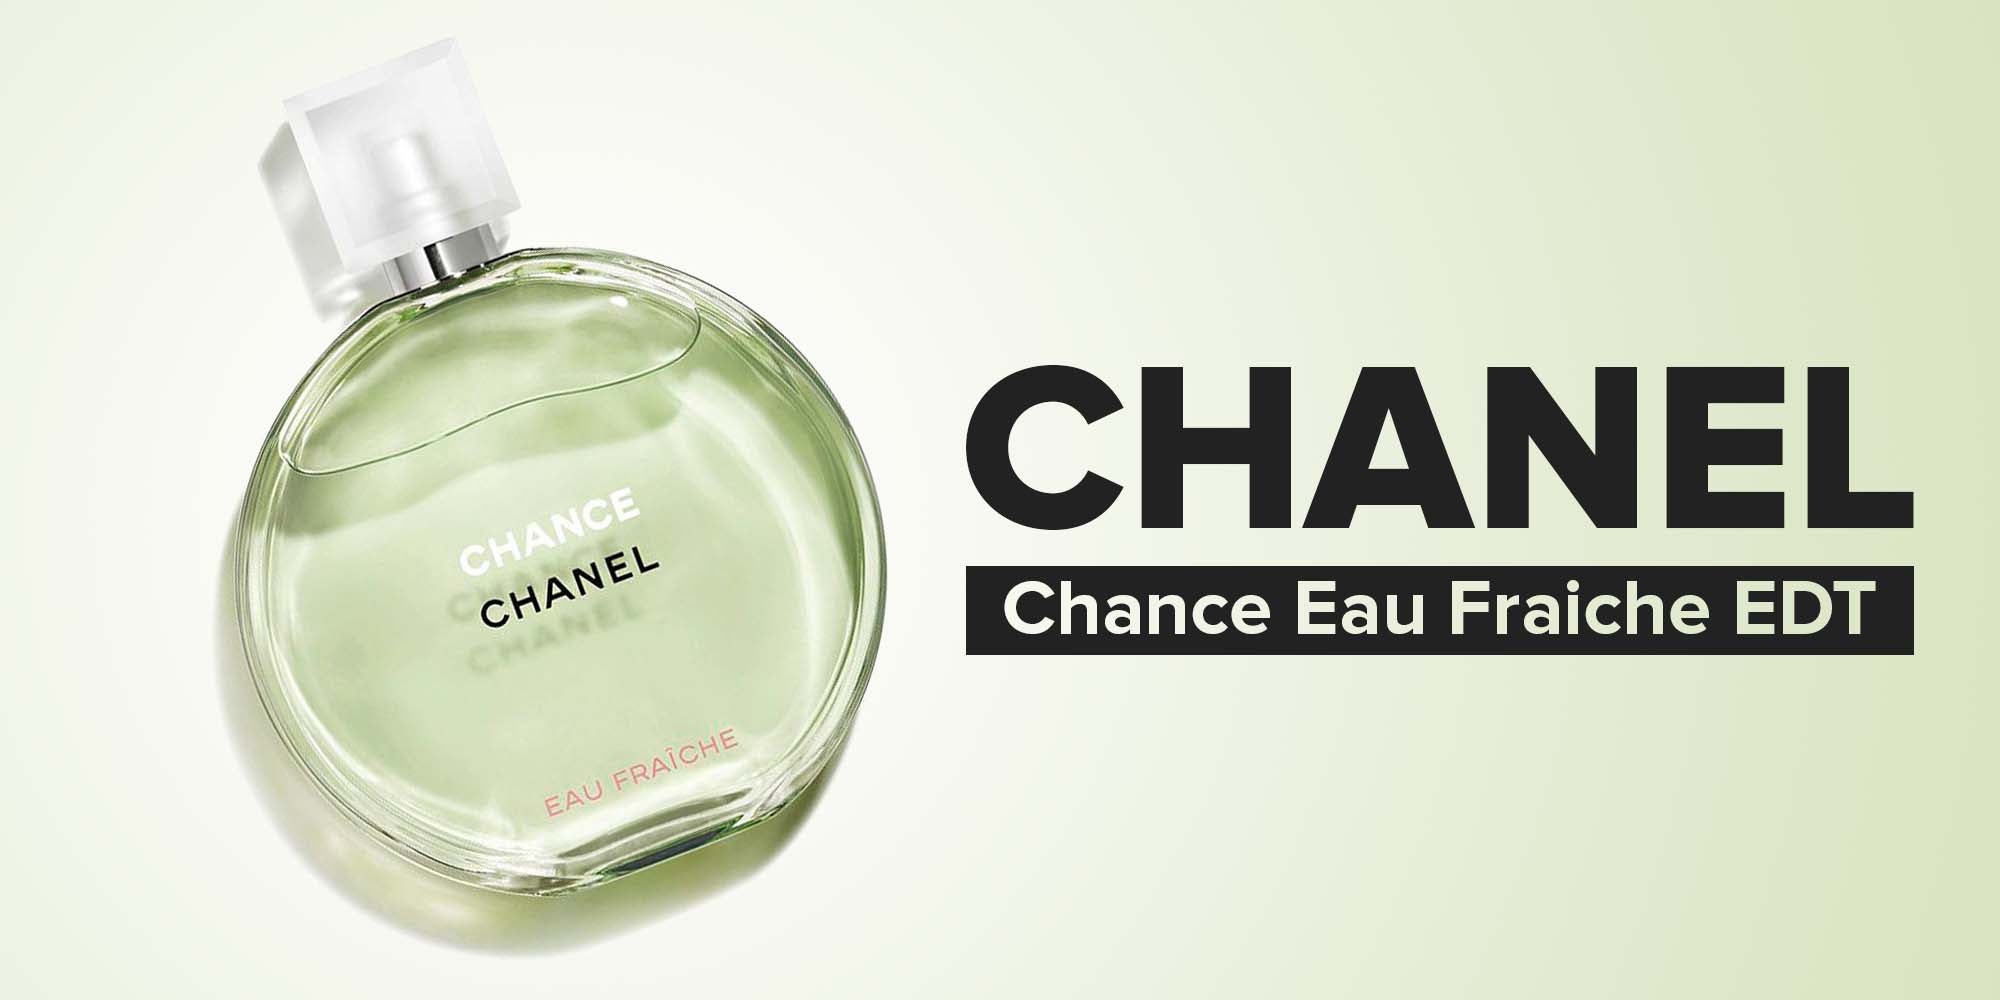 Chanel chance for women parfume 35ml price in Kuwait, X-Cite Kuwait